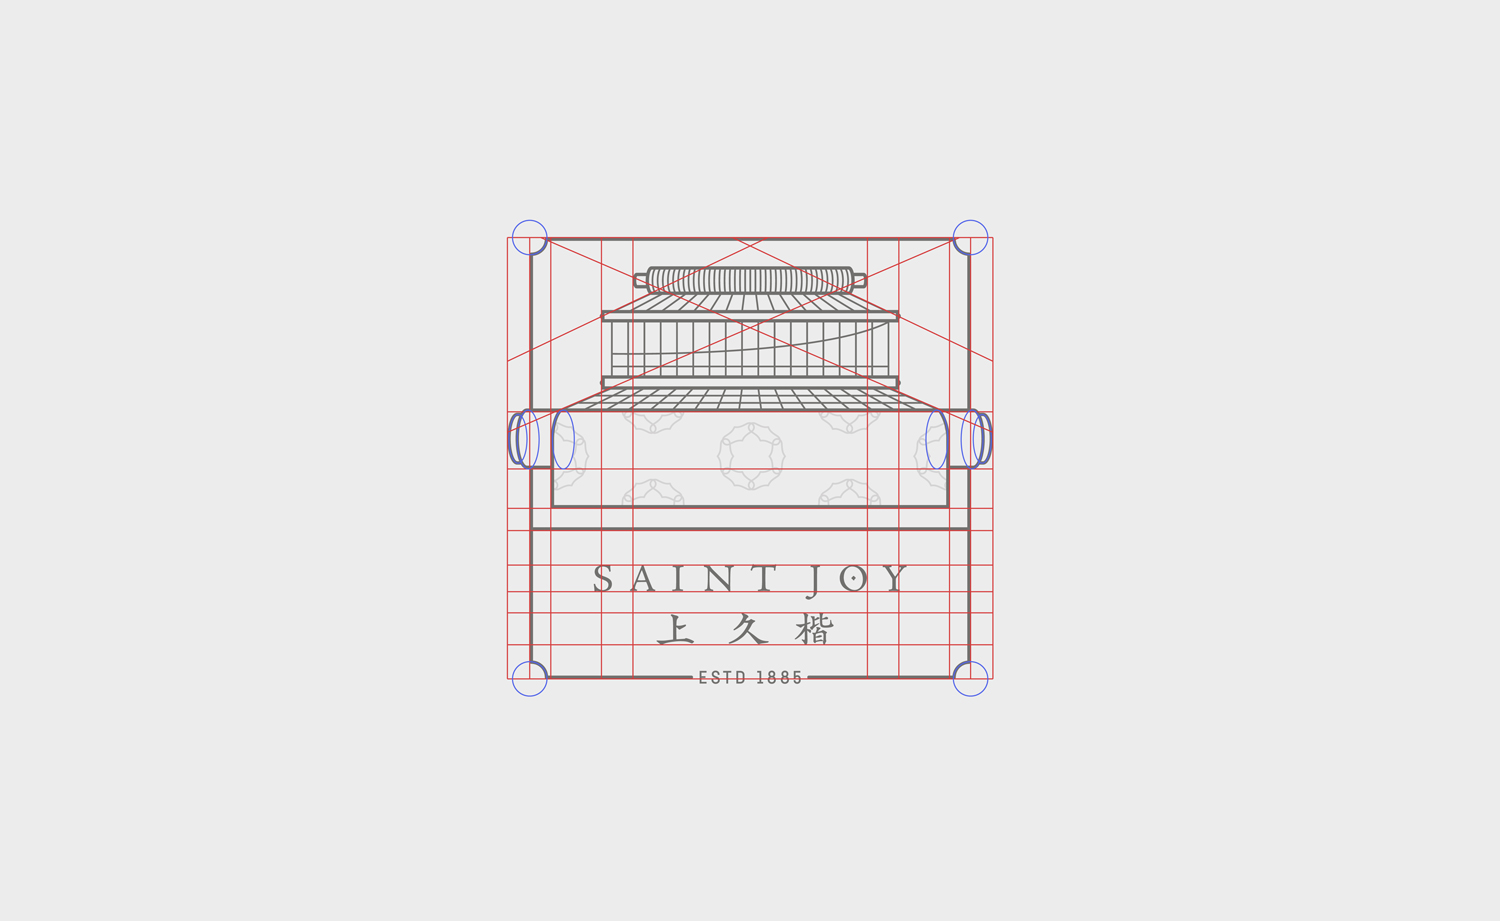 construction de l’identité visuelle de l'entreprise de maroquinerie saint joy par le studio graphique archétype à Annecy